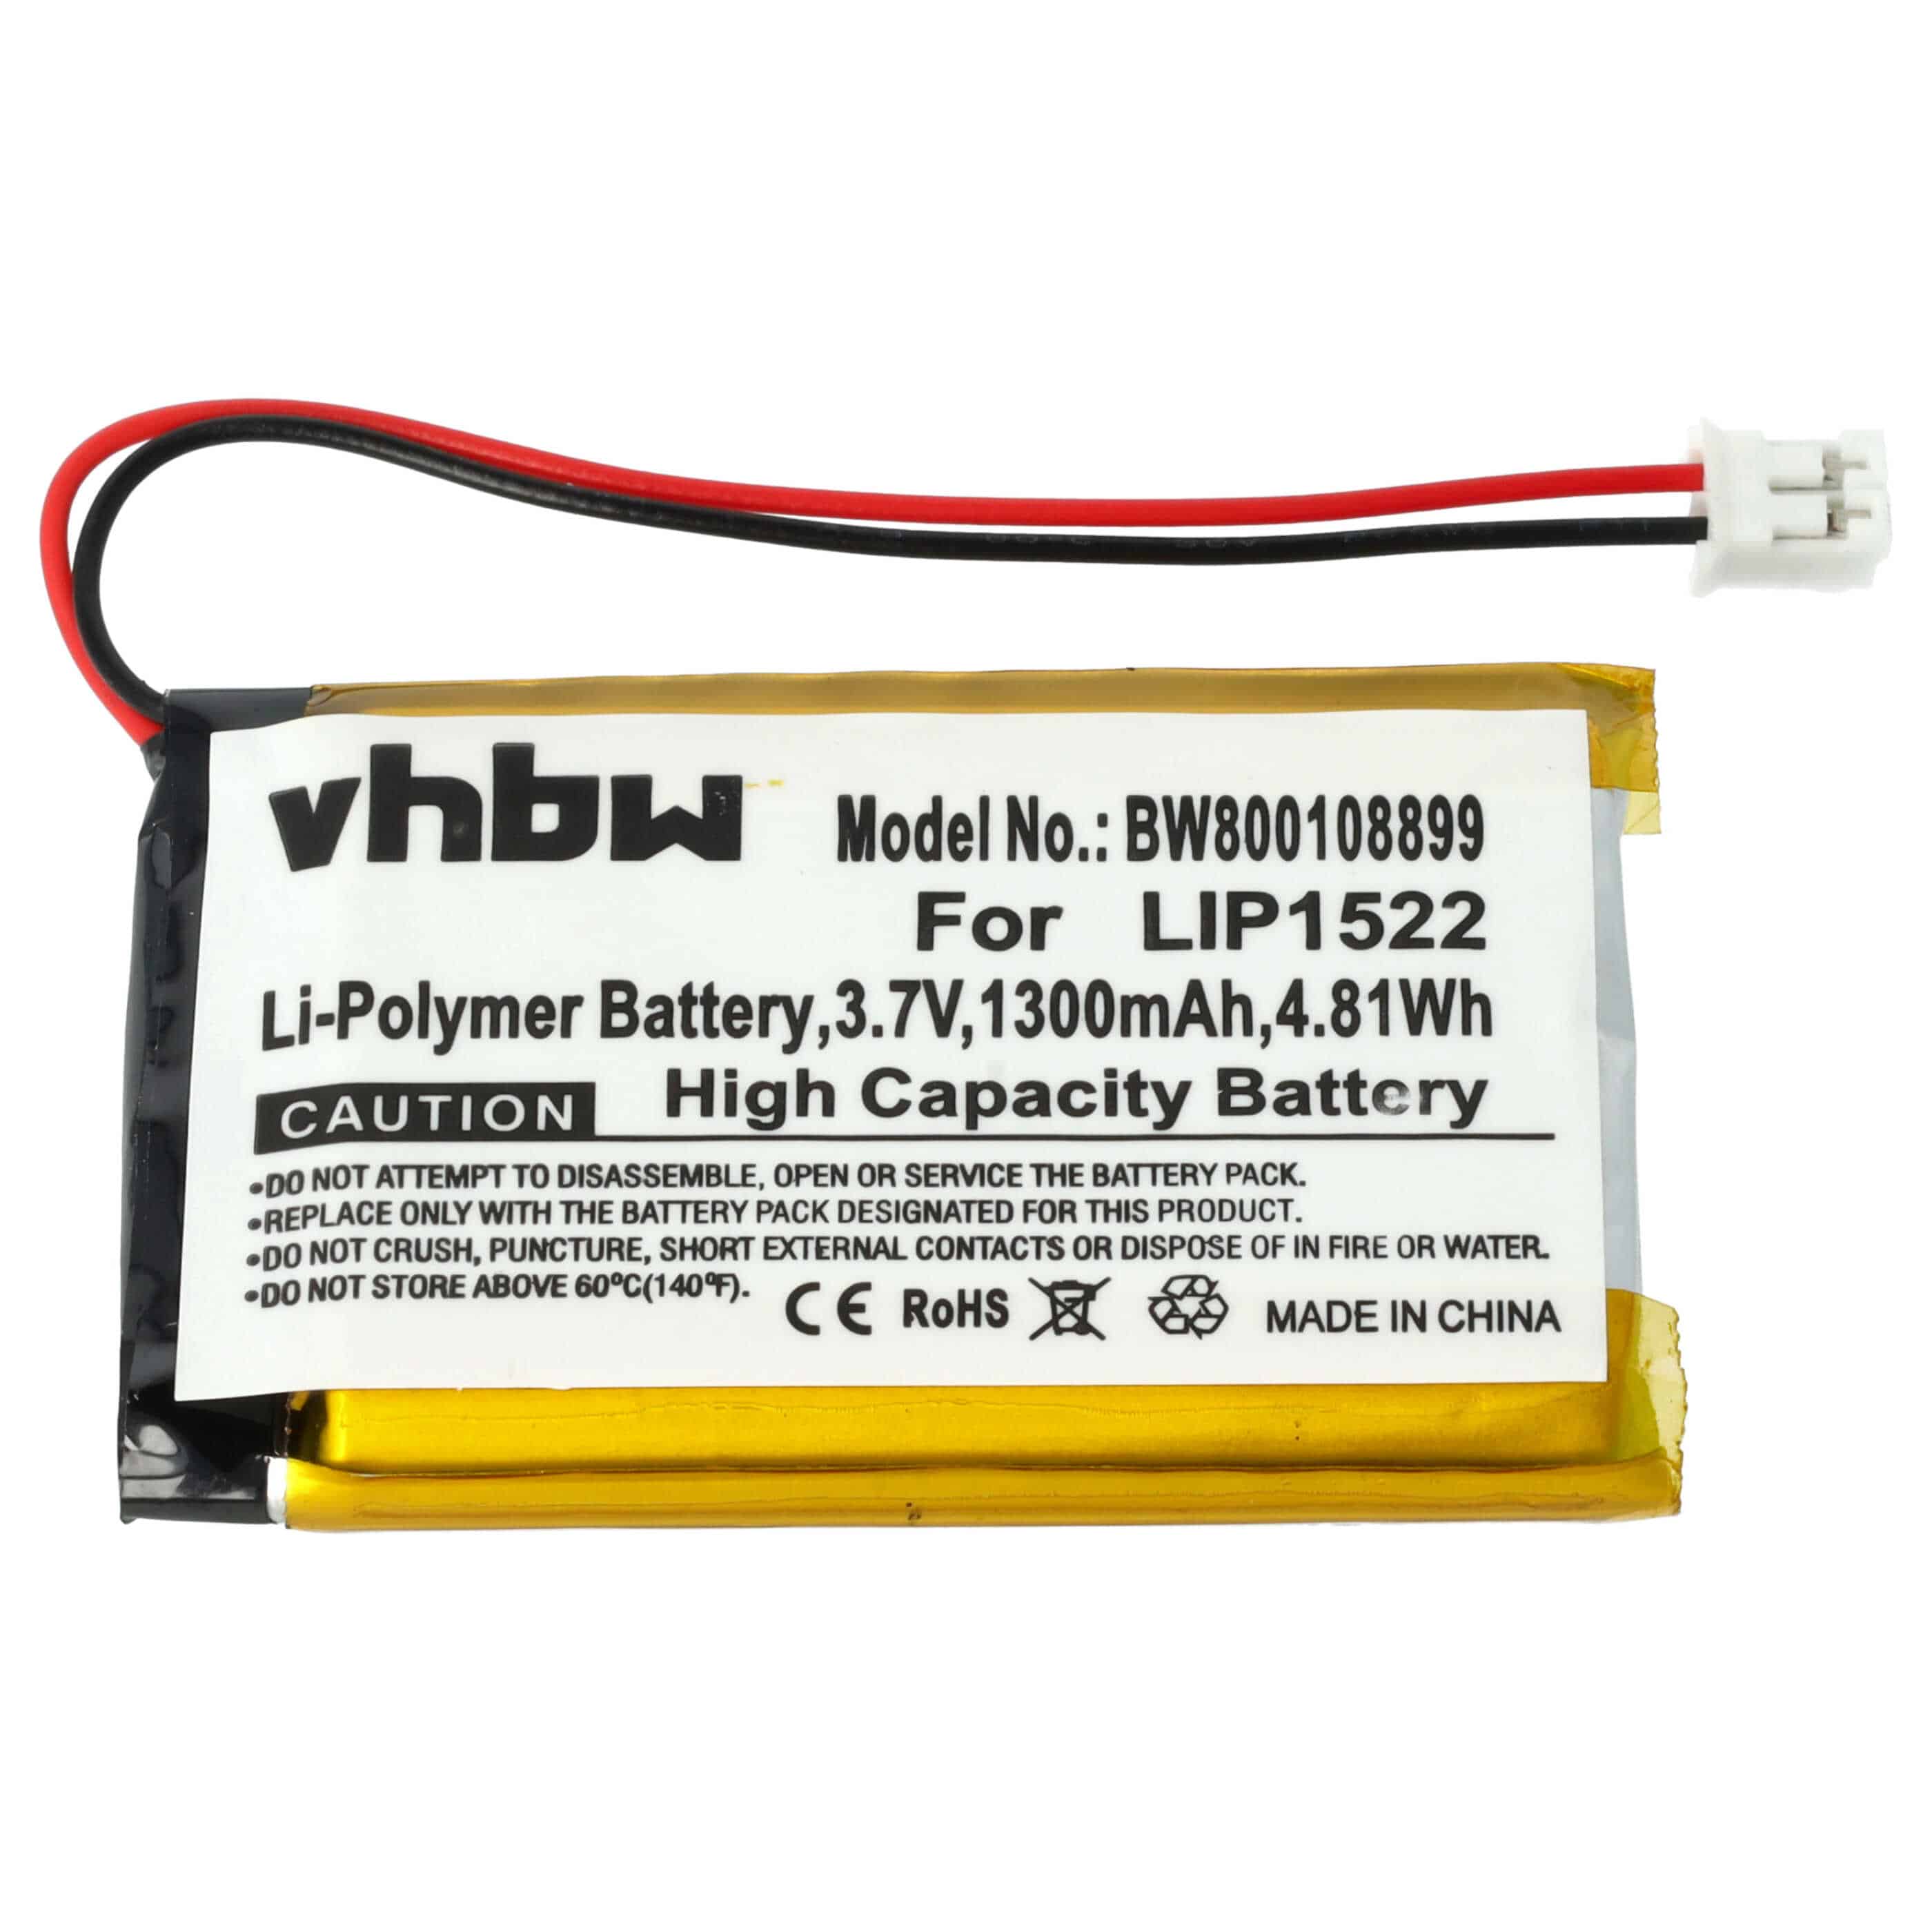 Batterie remplace Sony LIP1522, KCR1410 pour manette - 1300mAh 3,7V Li-ion